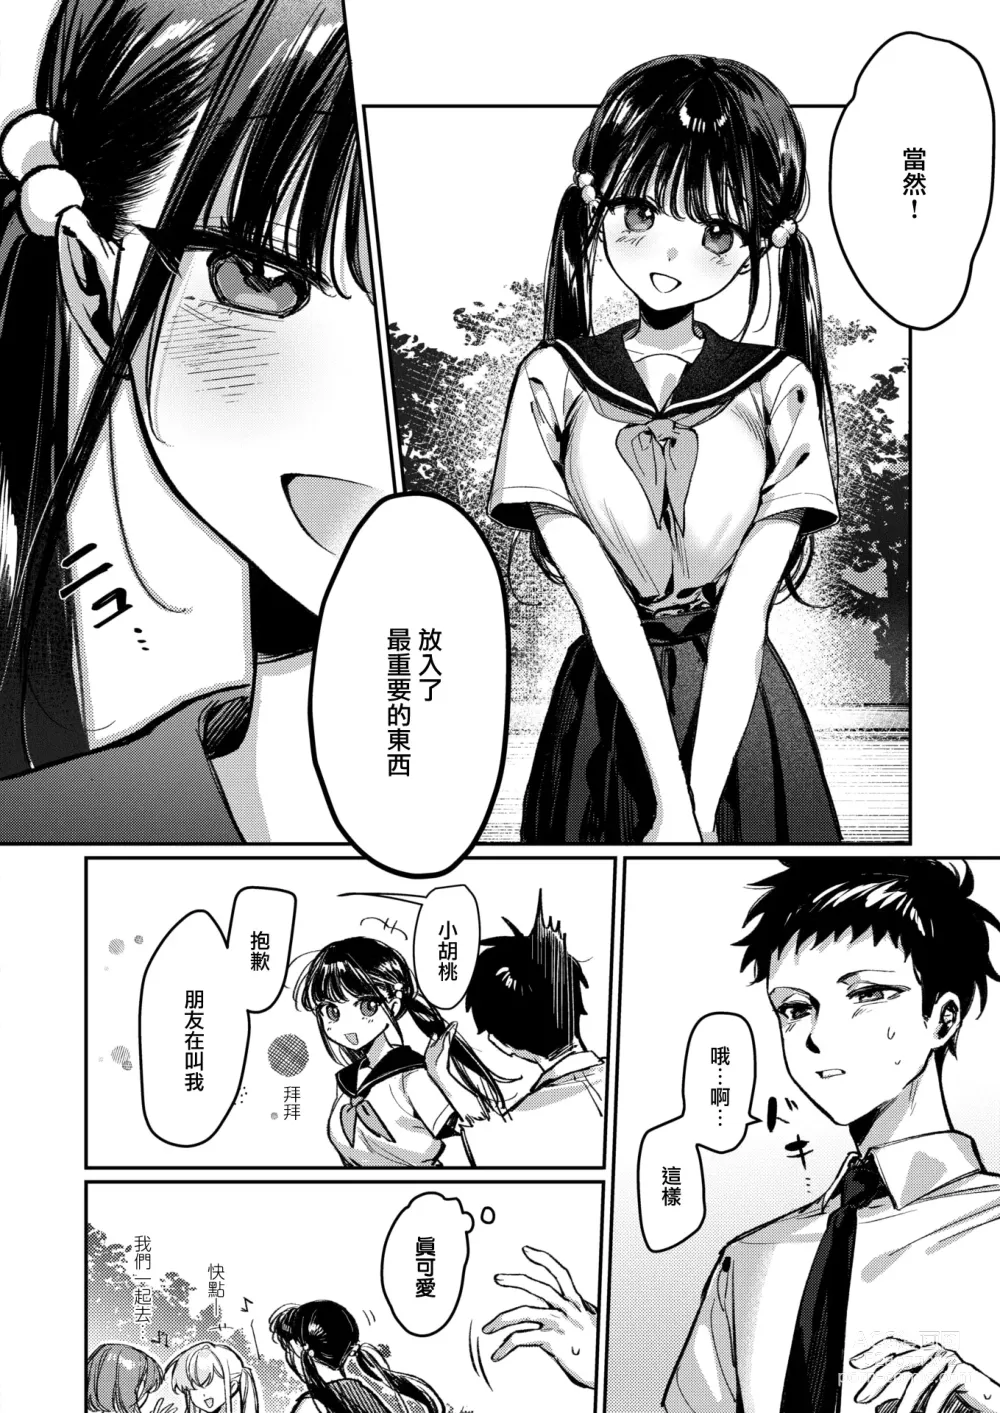 Page 3 of manga Doutei Reaper Sotsugyou Ryokou